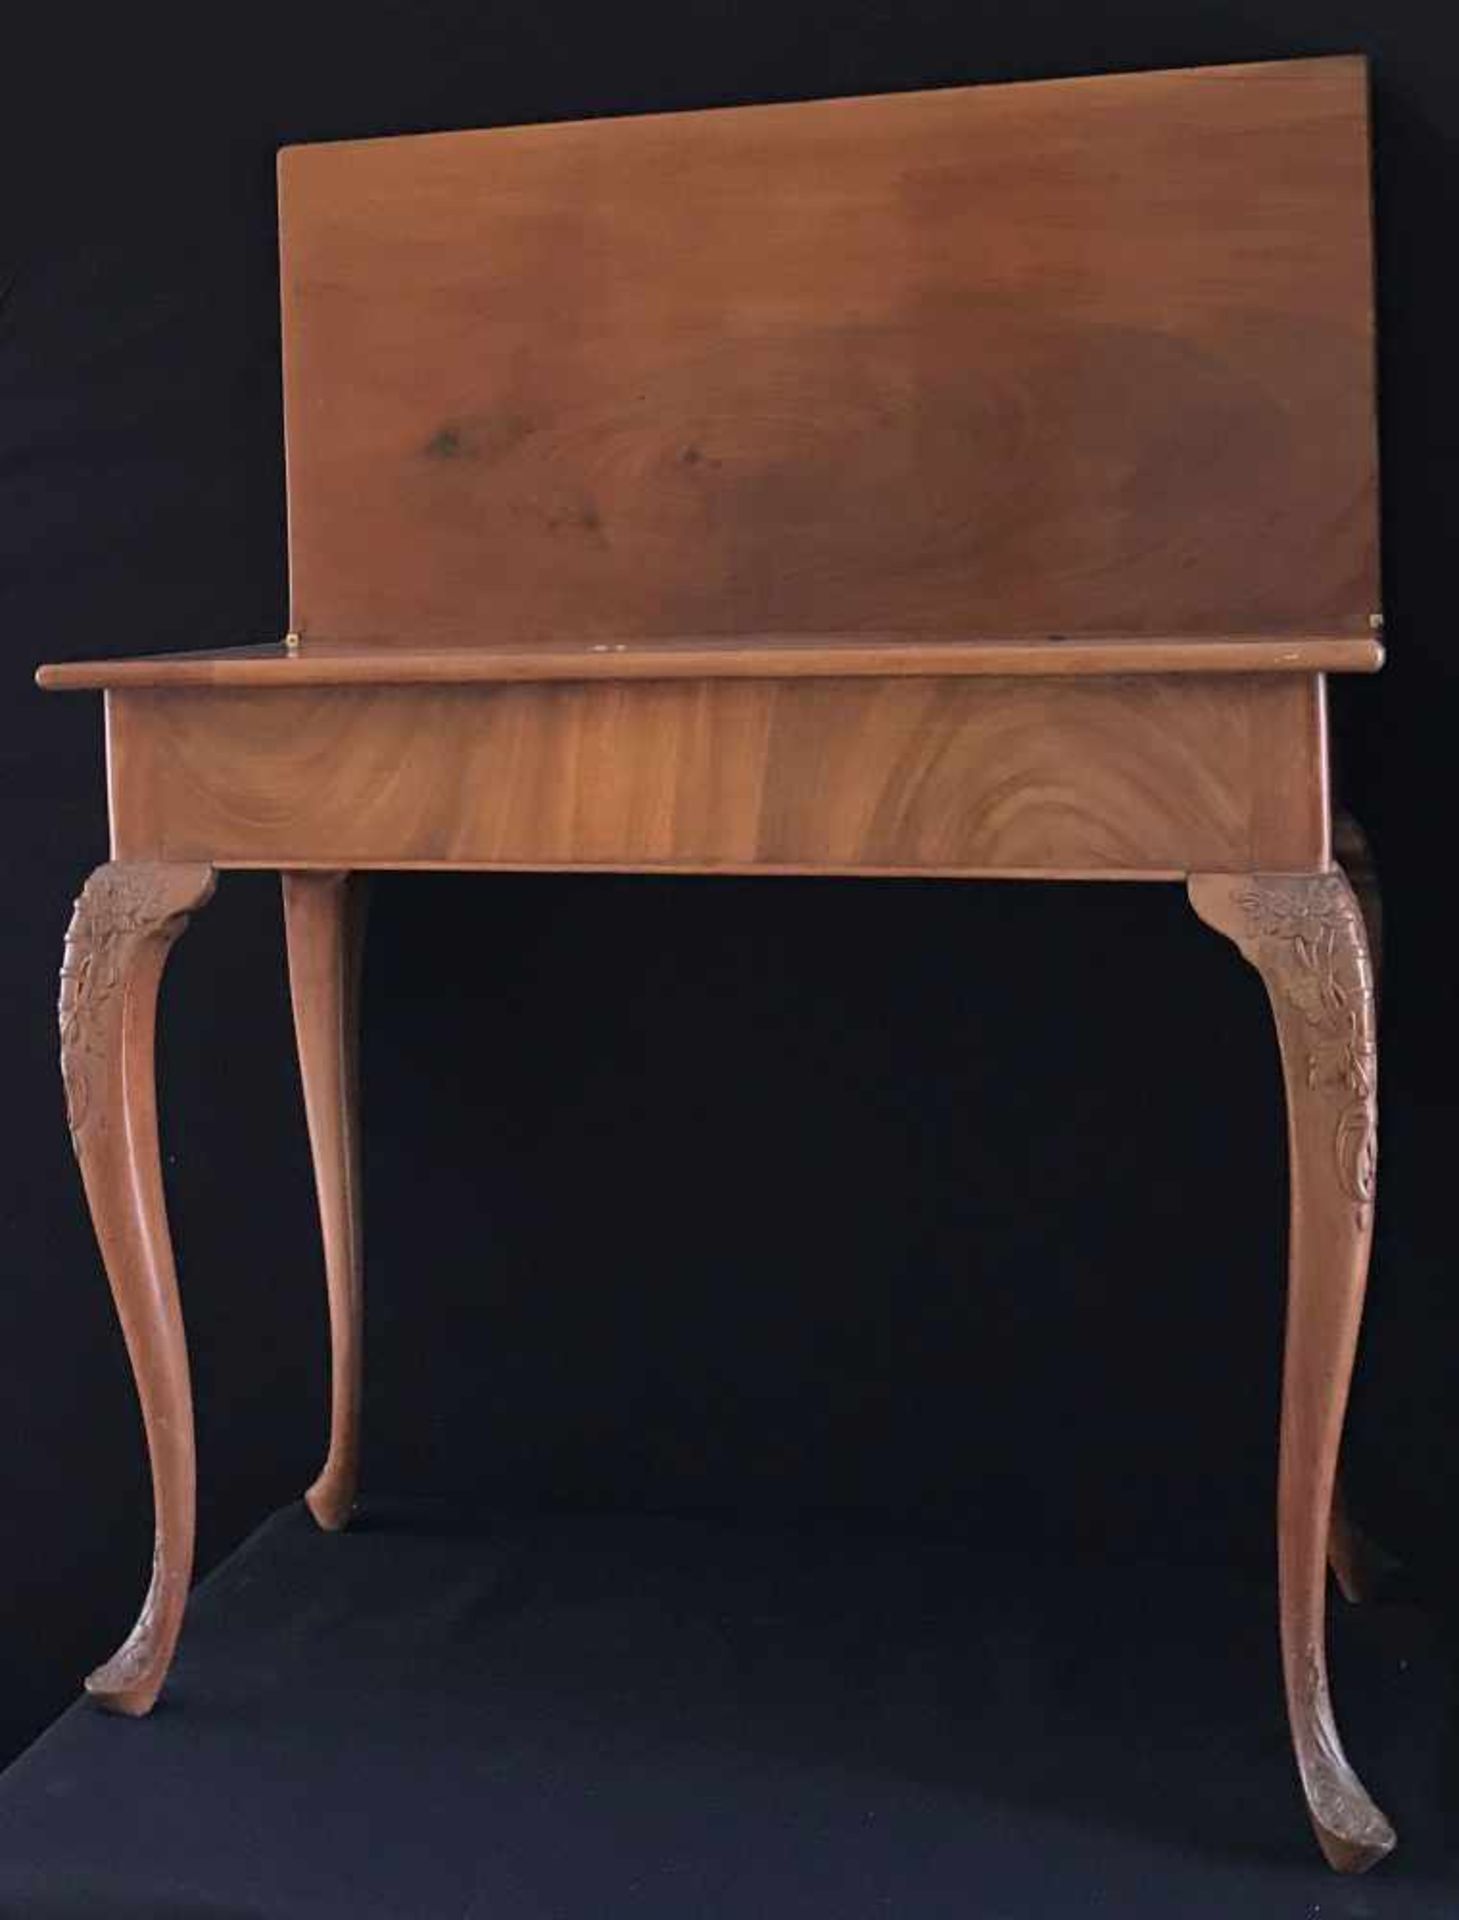 Spieltisch, Biedermeier, 2. Zeit, 2. H. 19. Jh., Holz, aufklappbar, Altersspuren - Bild 3 aus 7